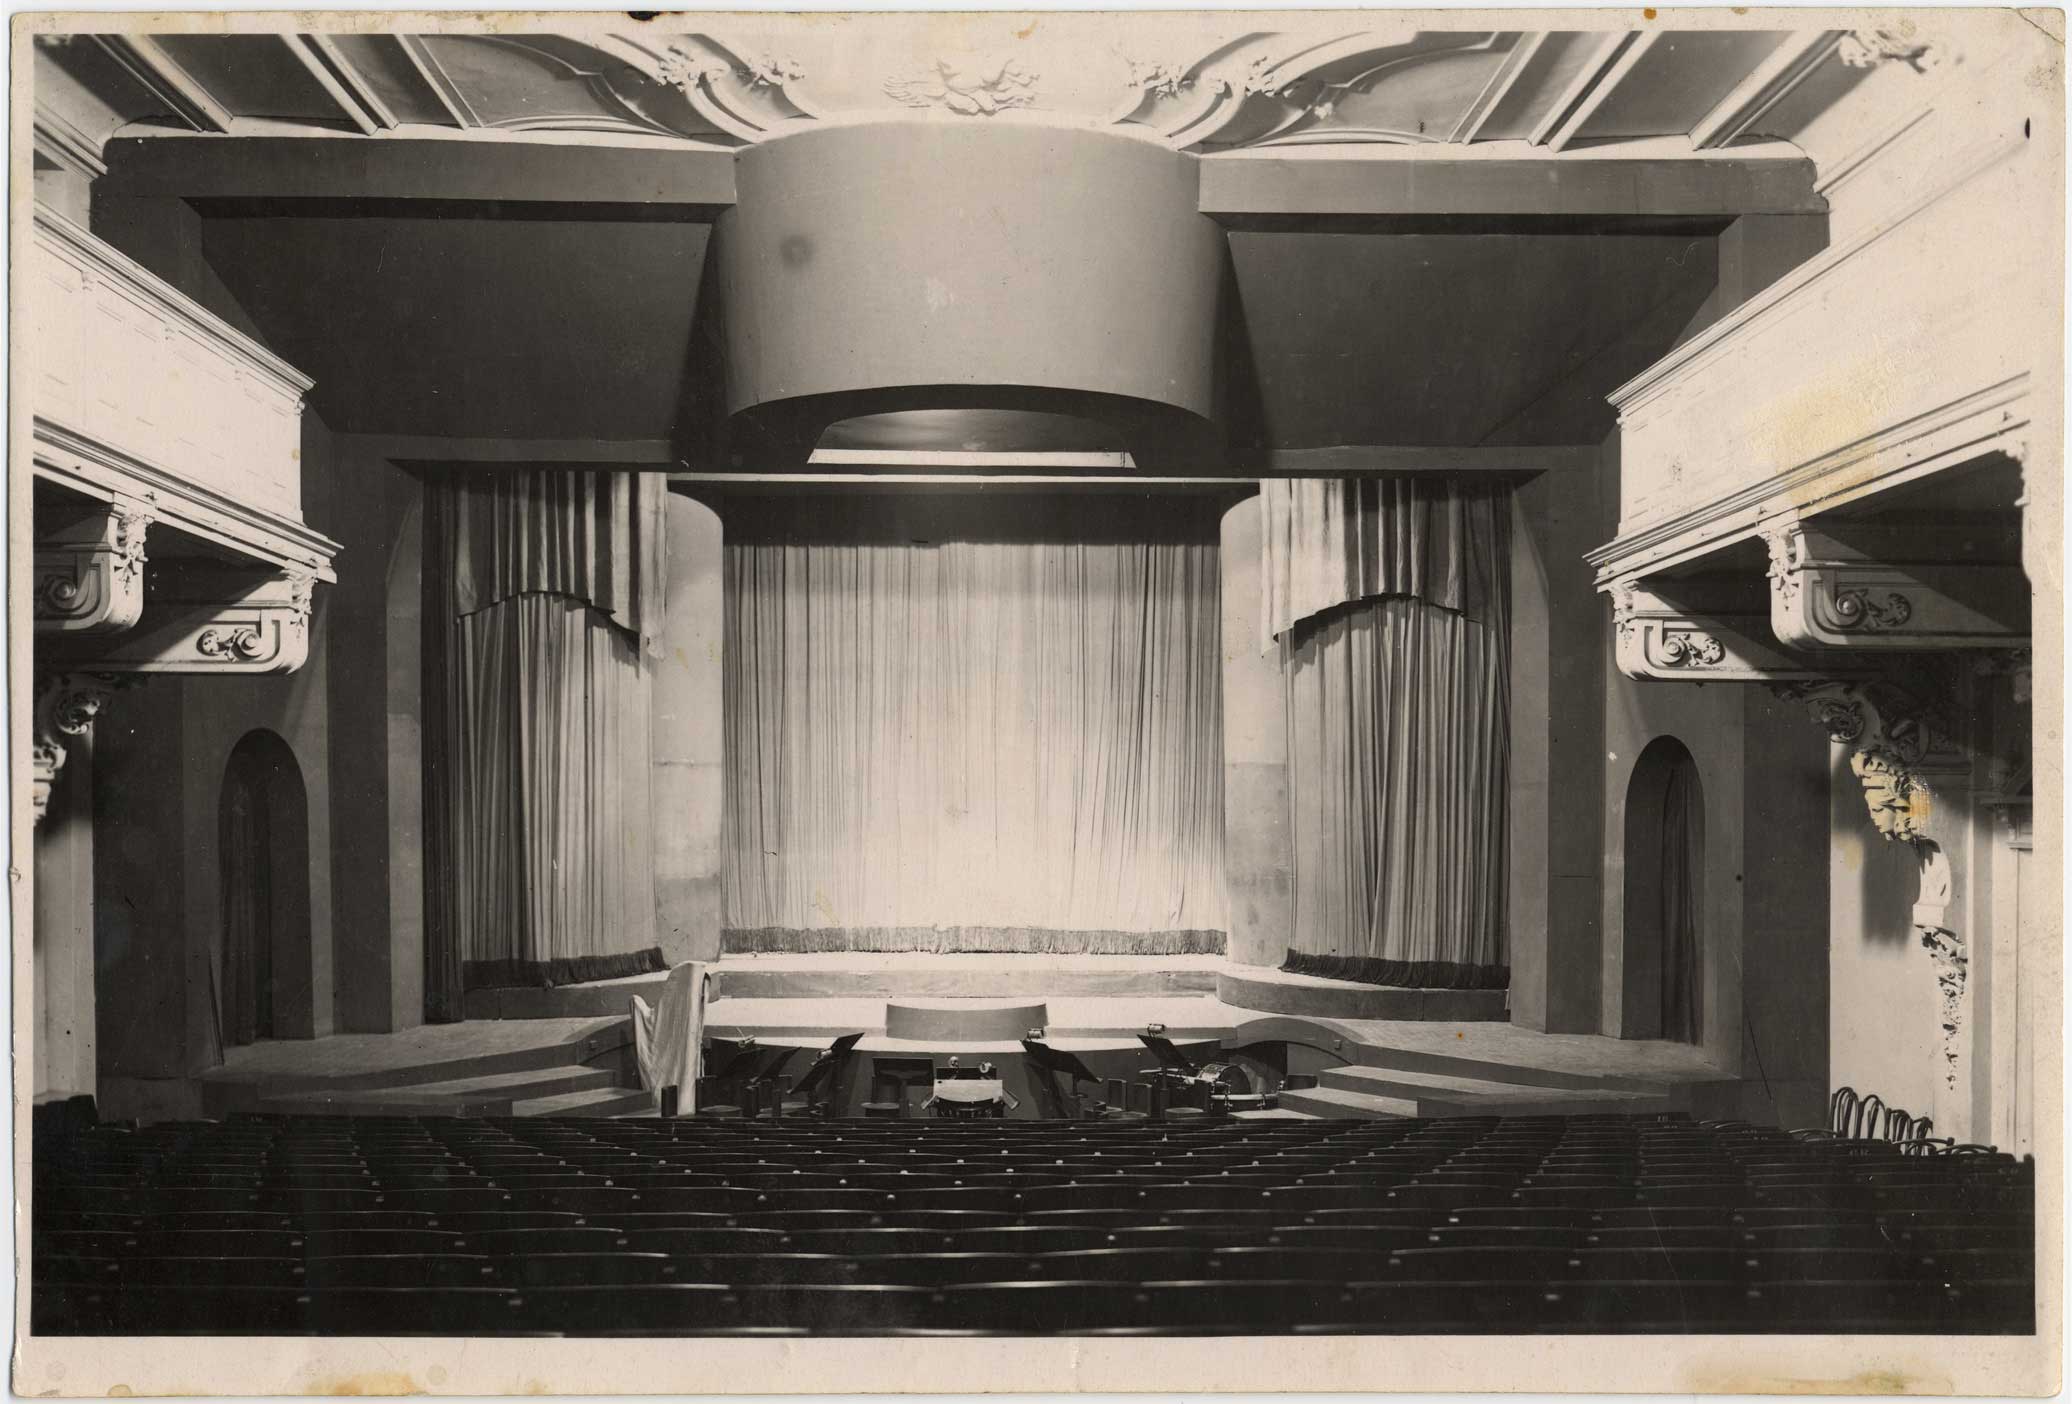 Dailes teātra skatītāju zāle un skatuve Romanova (tagad Lāčplēša) ielā 25, pirms ugunsgrēka 1931. gada 3. oktobrī. Fotogrāfs nezināms, [1920. gadu beigas]. Foto: Rakstniecības, teātra un mūzikas krātuve, RTMM 239158.